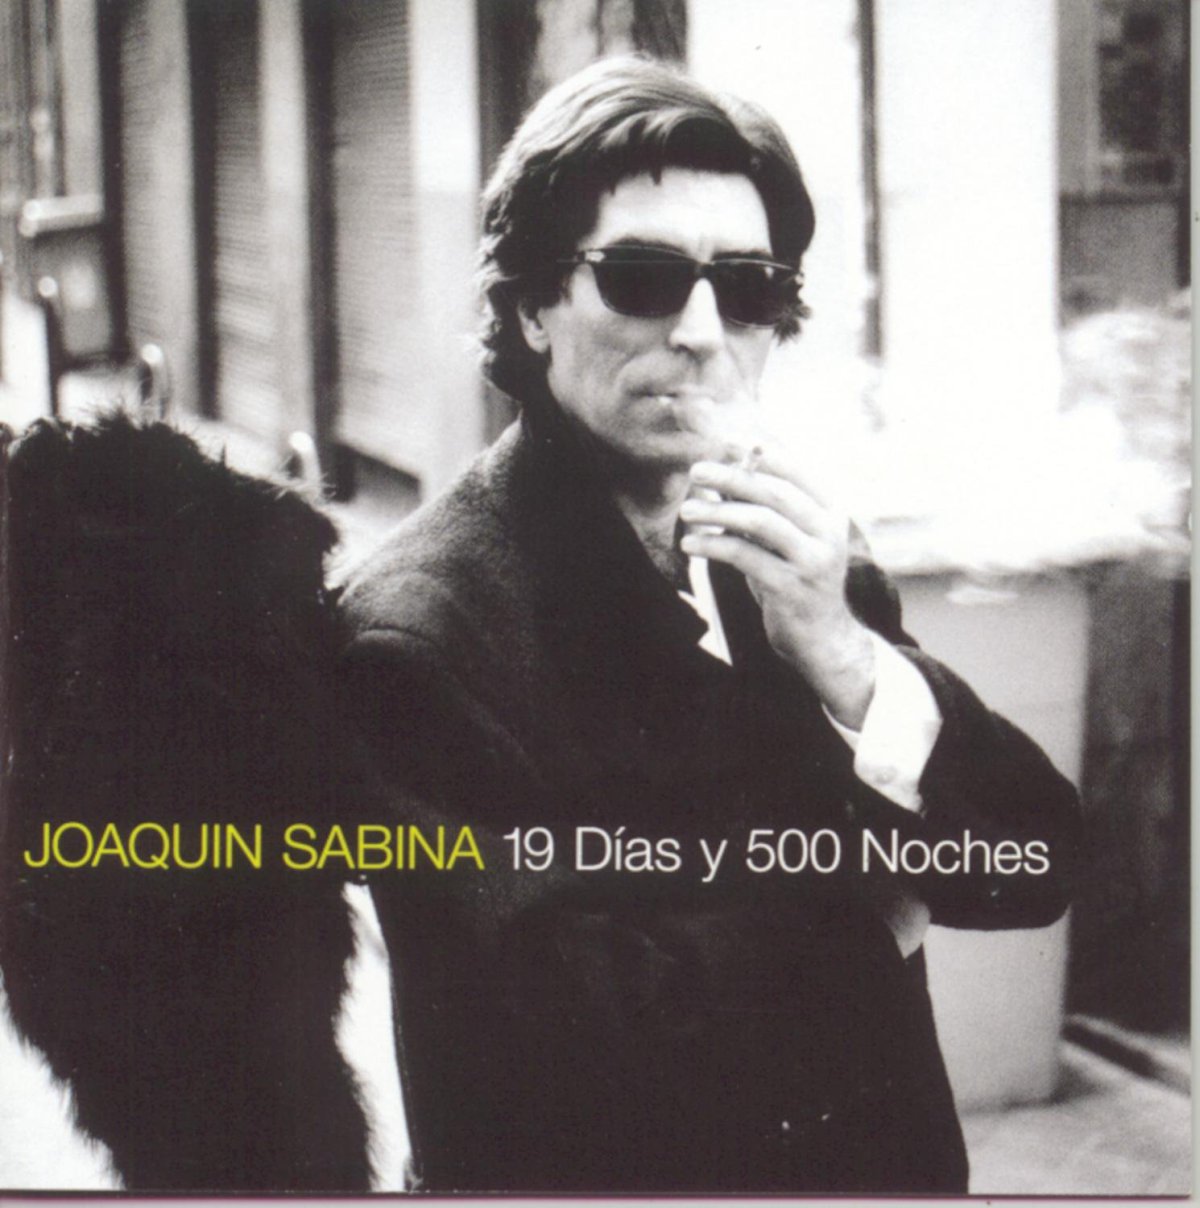 '19 días y 500 noches', Joaquín Sabina